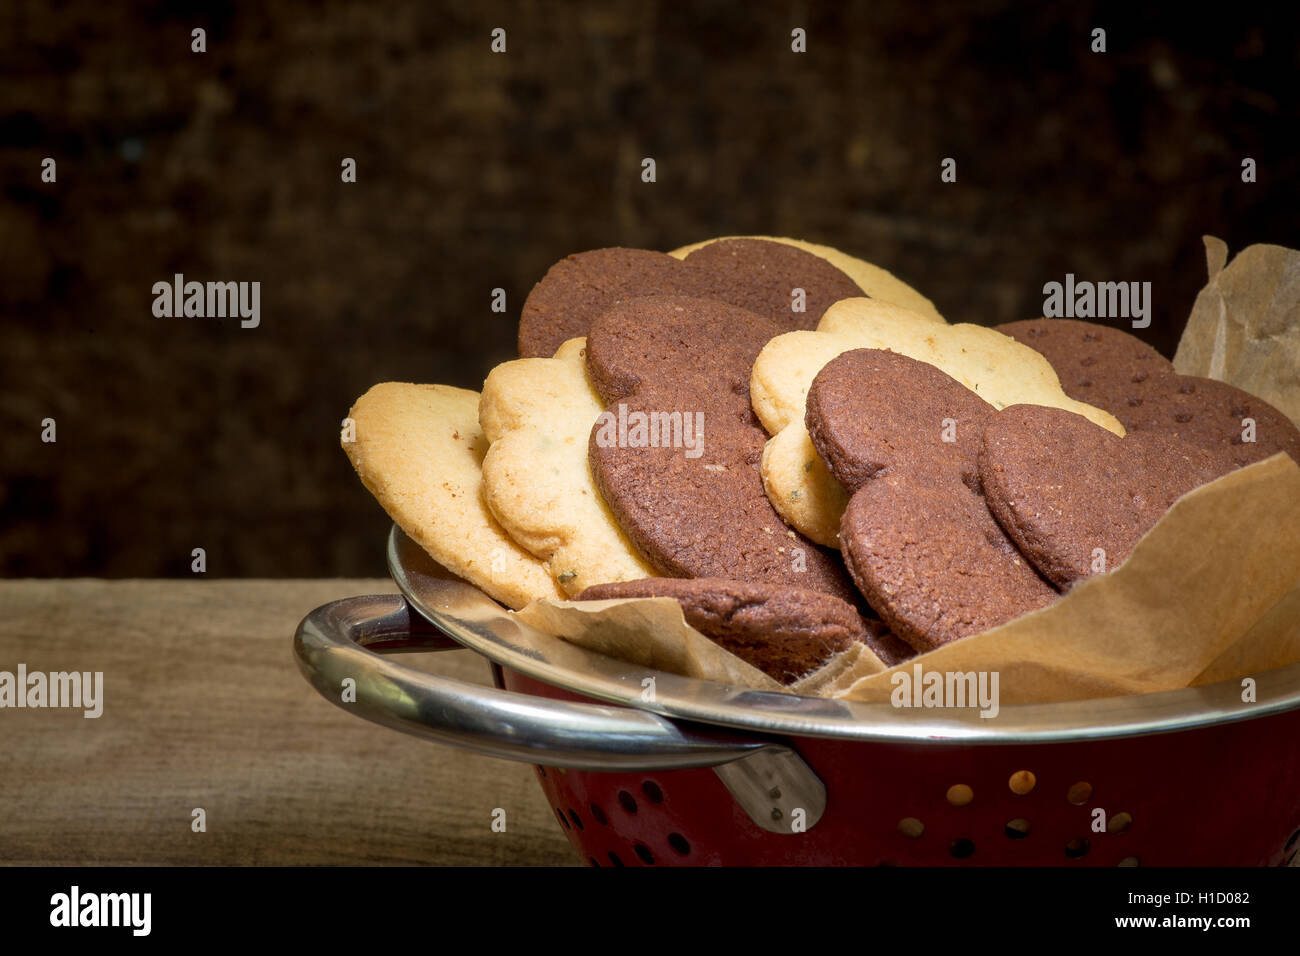 Mexican cioccolata calda, limone timo e classic vaniglia biscotti frollini nel recipiente stagno con sfondo scuro Foto Stock